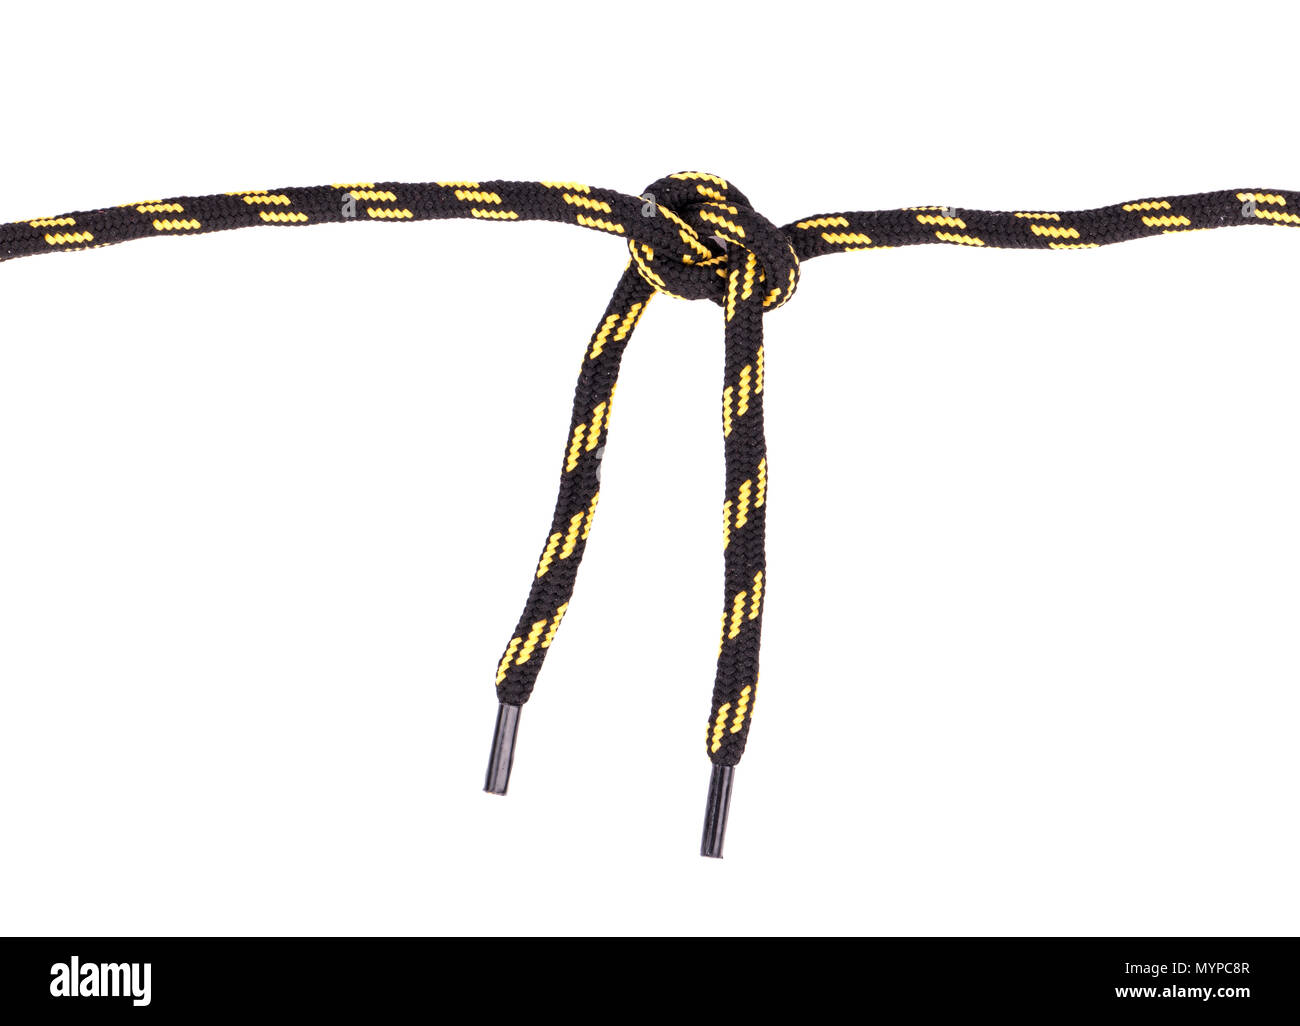 Schnürsenkel in Schwarz und Gelb ein Knoten auf einem weißen Hintergrund  gebunden Stockfotografie - Alamy